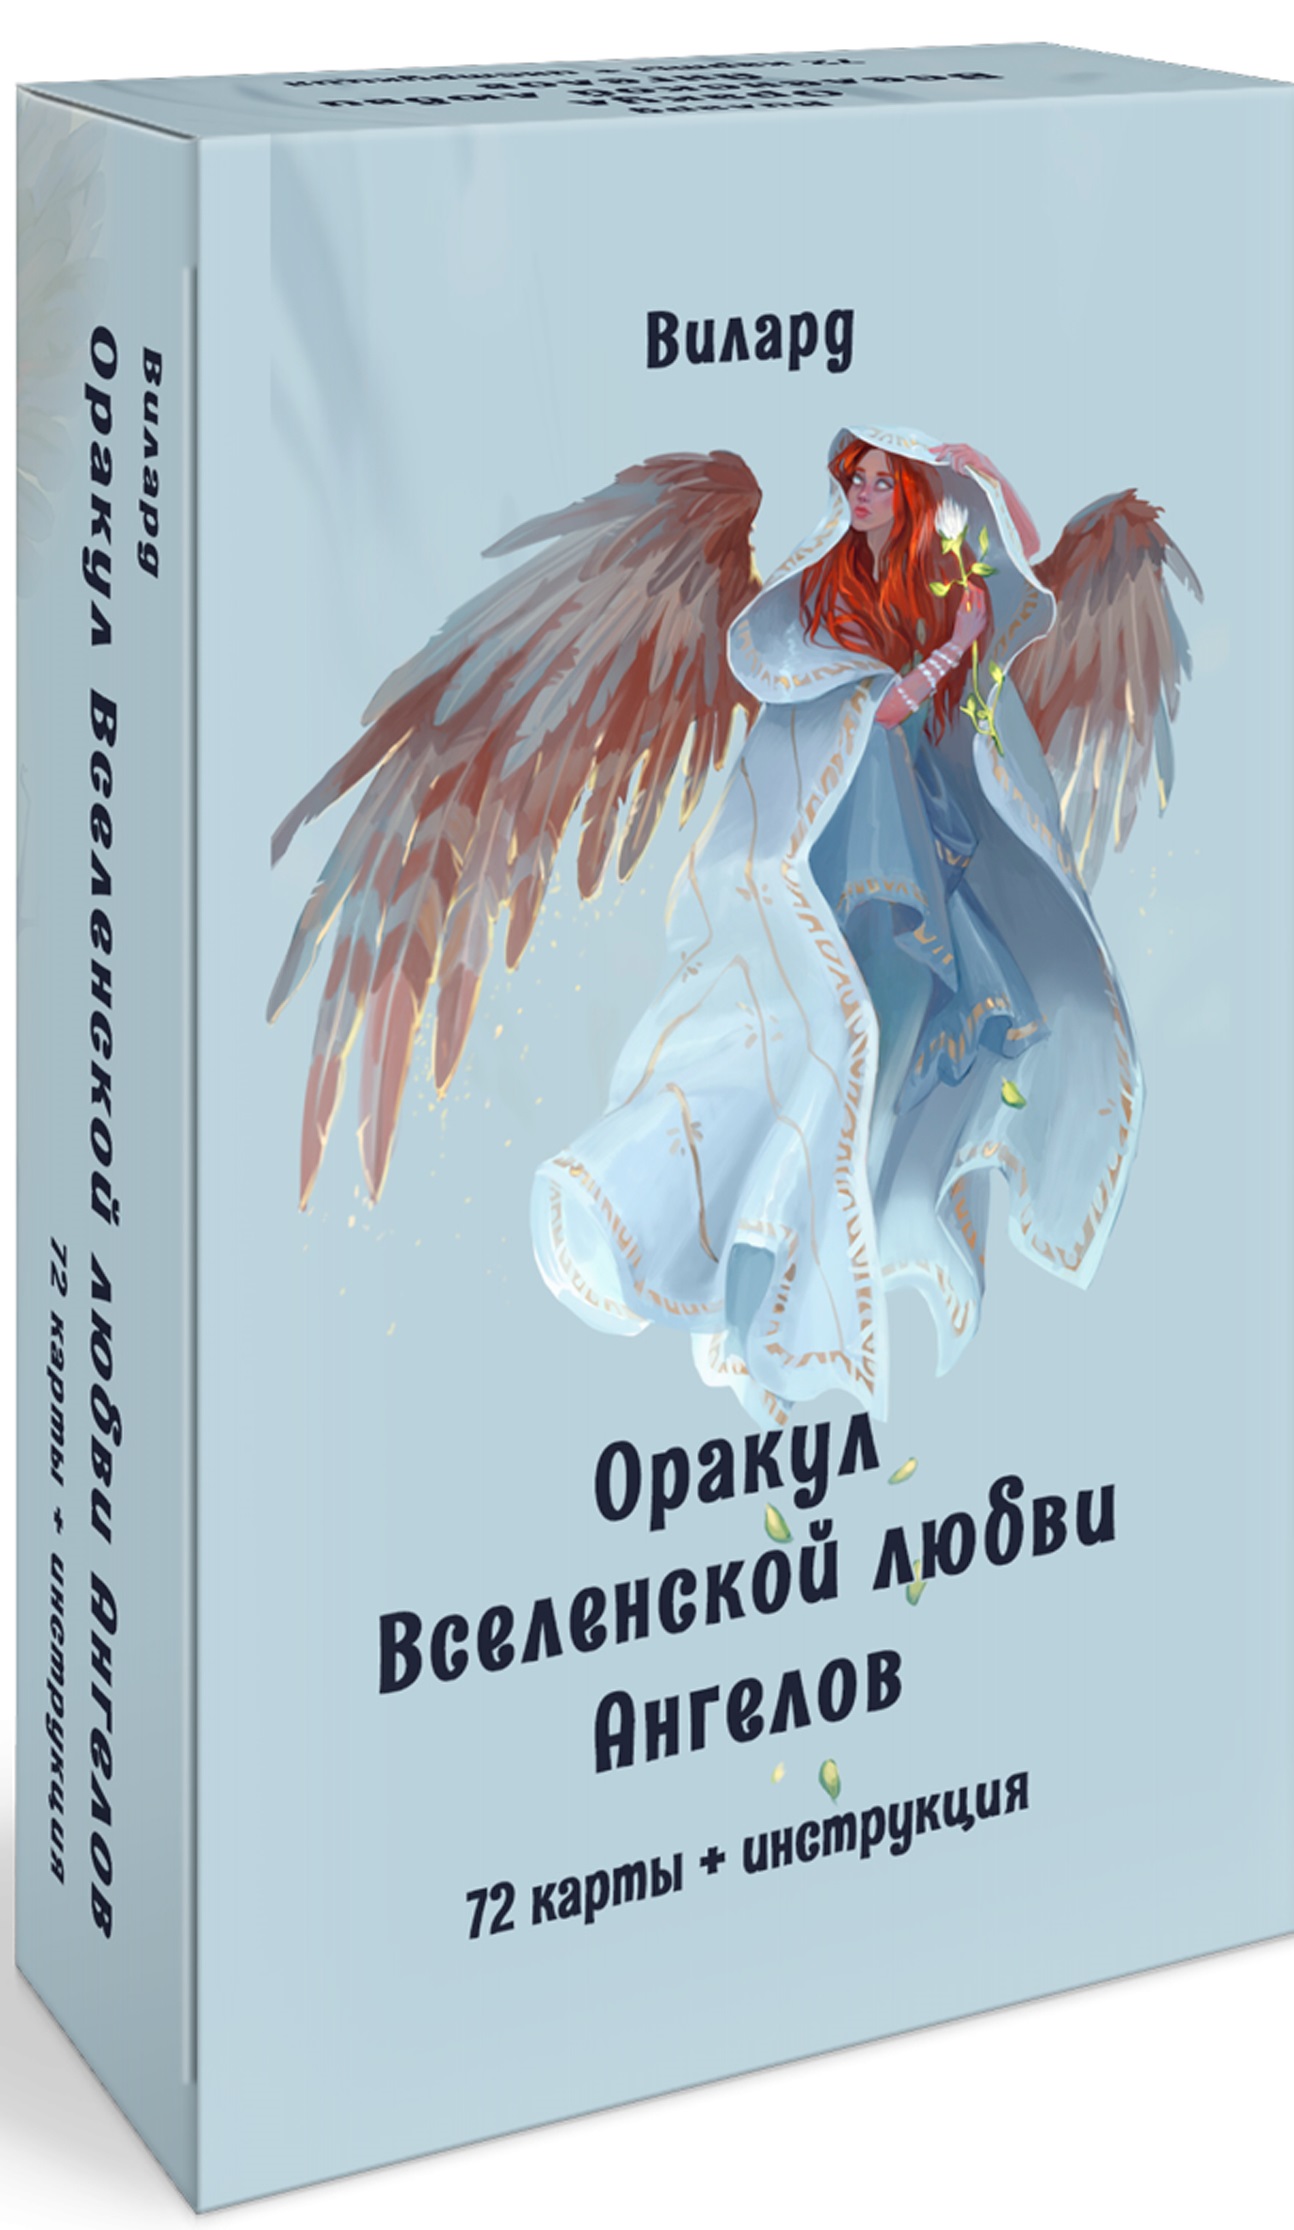 Оракул вселенской любви ангелов (72 карты + инструкция)